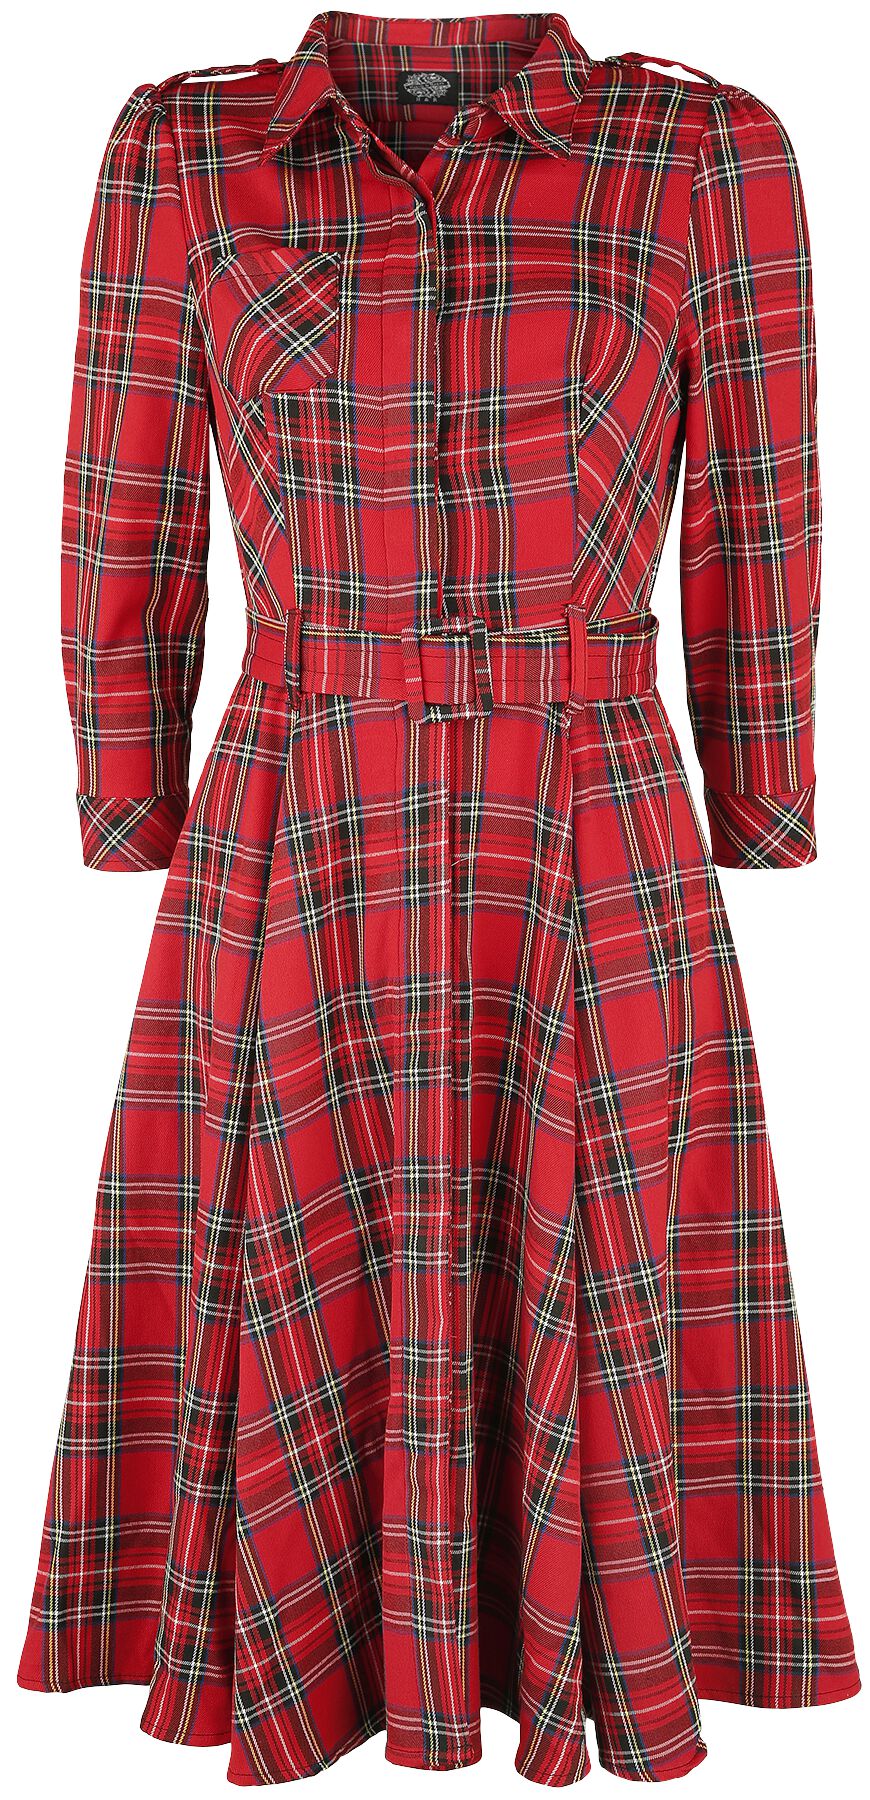 H&R London - Rockabilly Kleid knielang - Evie Red Tartan Swing Dress - XS bis XXL - für Damen - Größe XS - schwarz/rot von H&R London